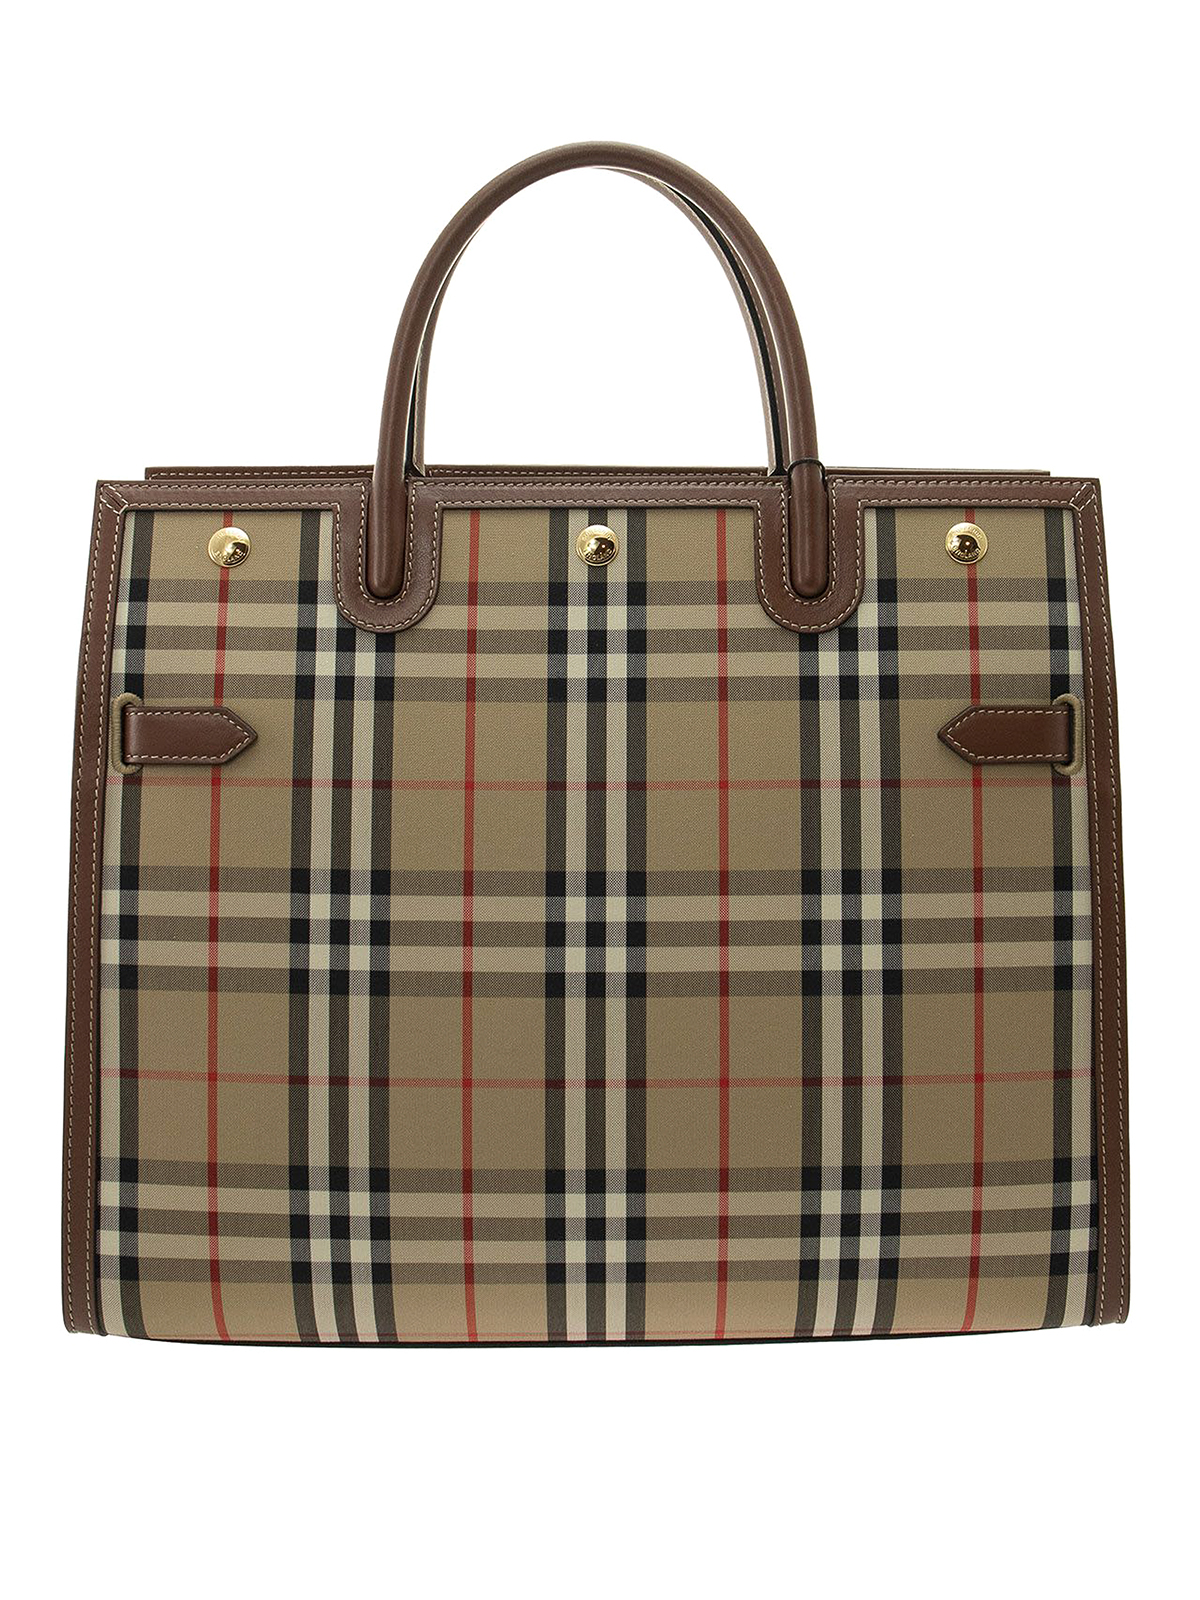 Burberry - Medium Title shopper - totes bags - 8024685 | iKRIX.com